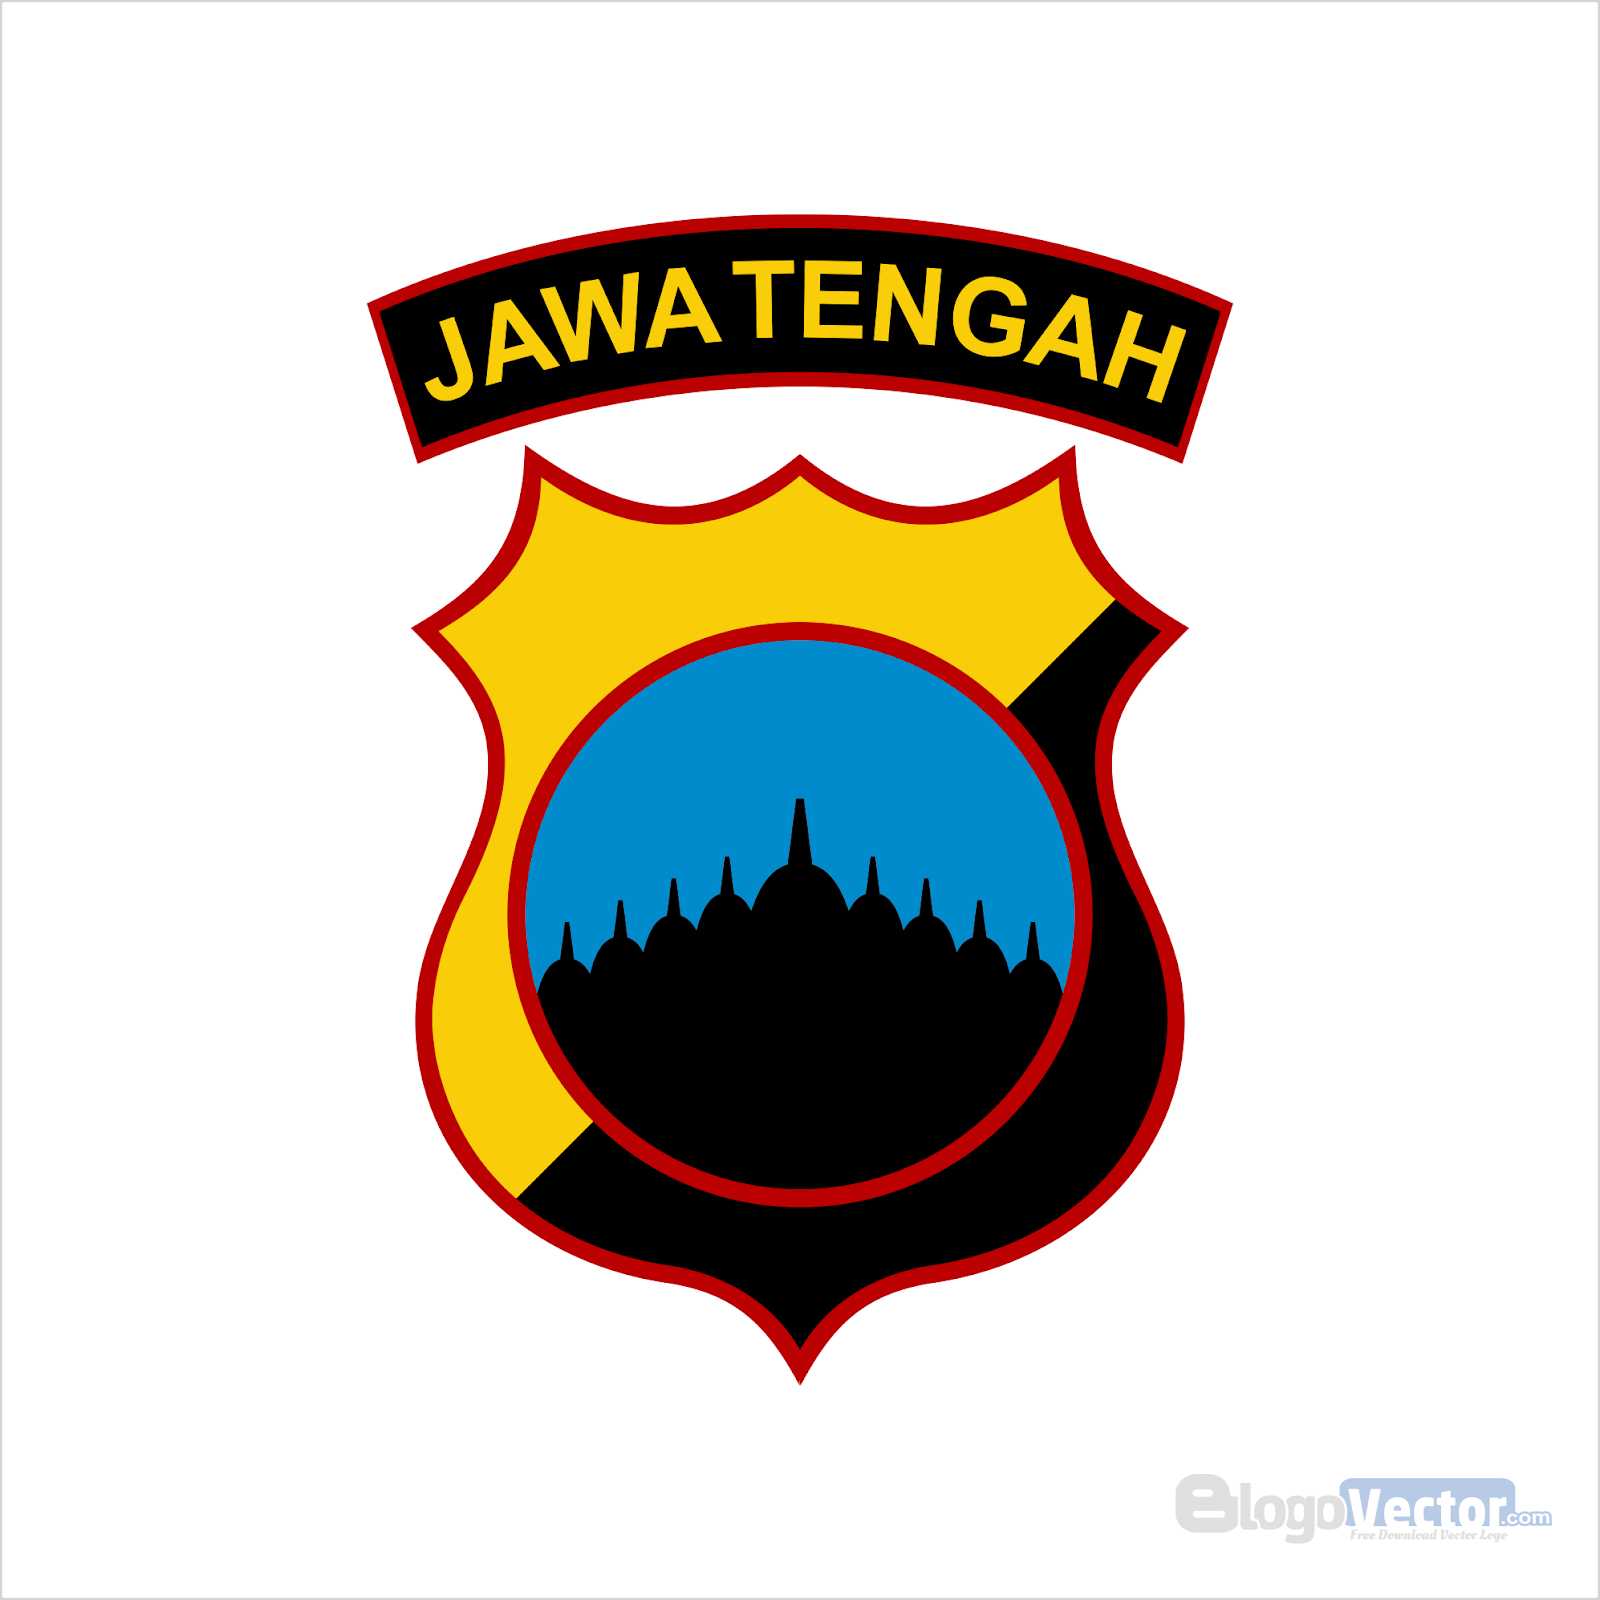 Polda Jawa Tengah Logo vector (.cdr) - BlogoVector